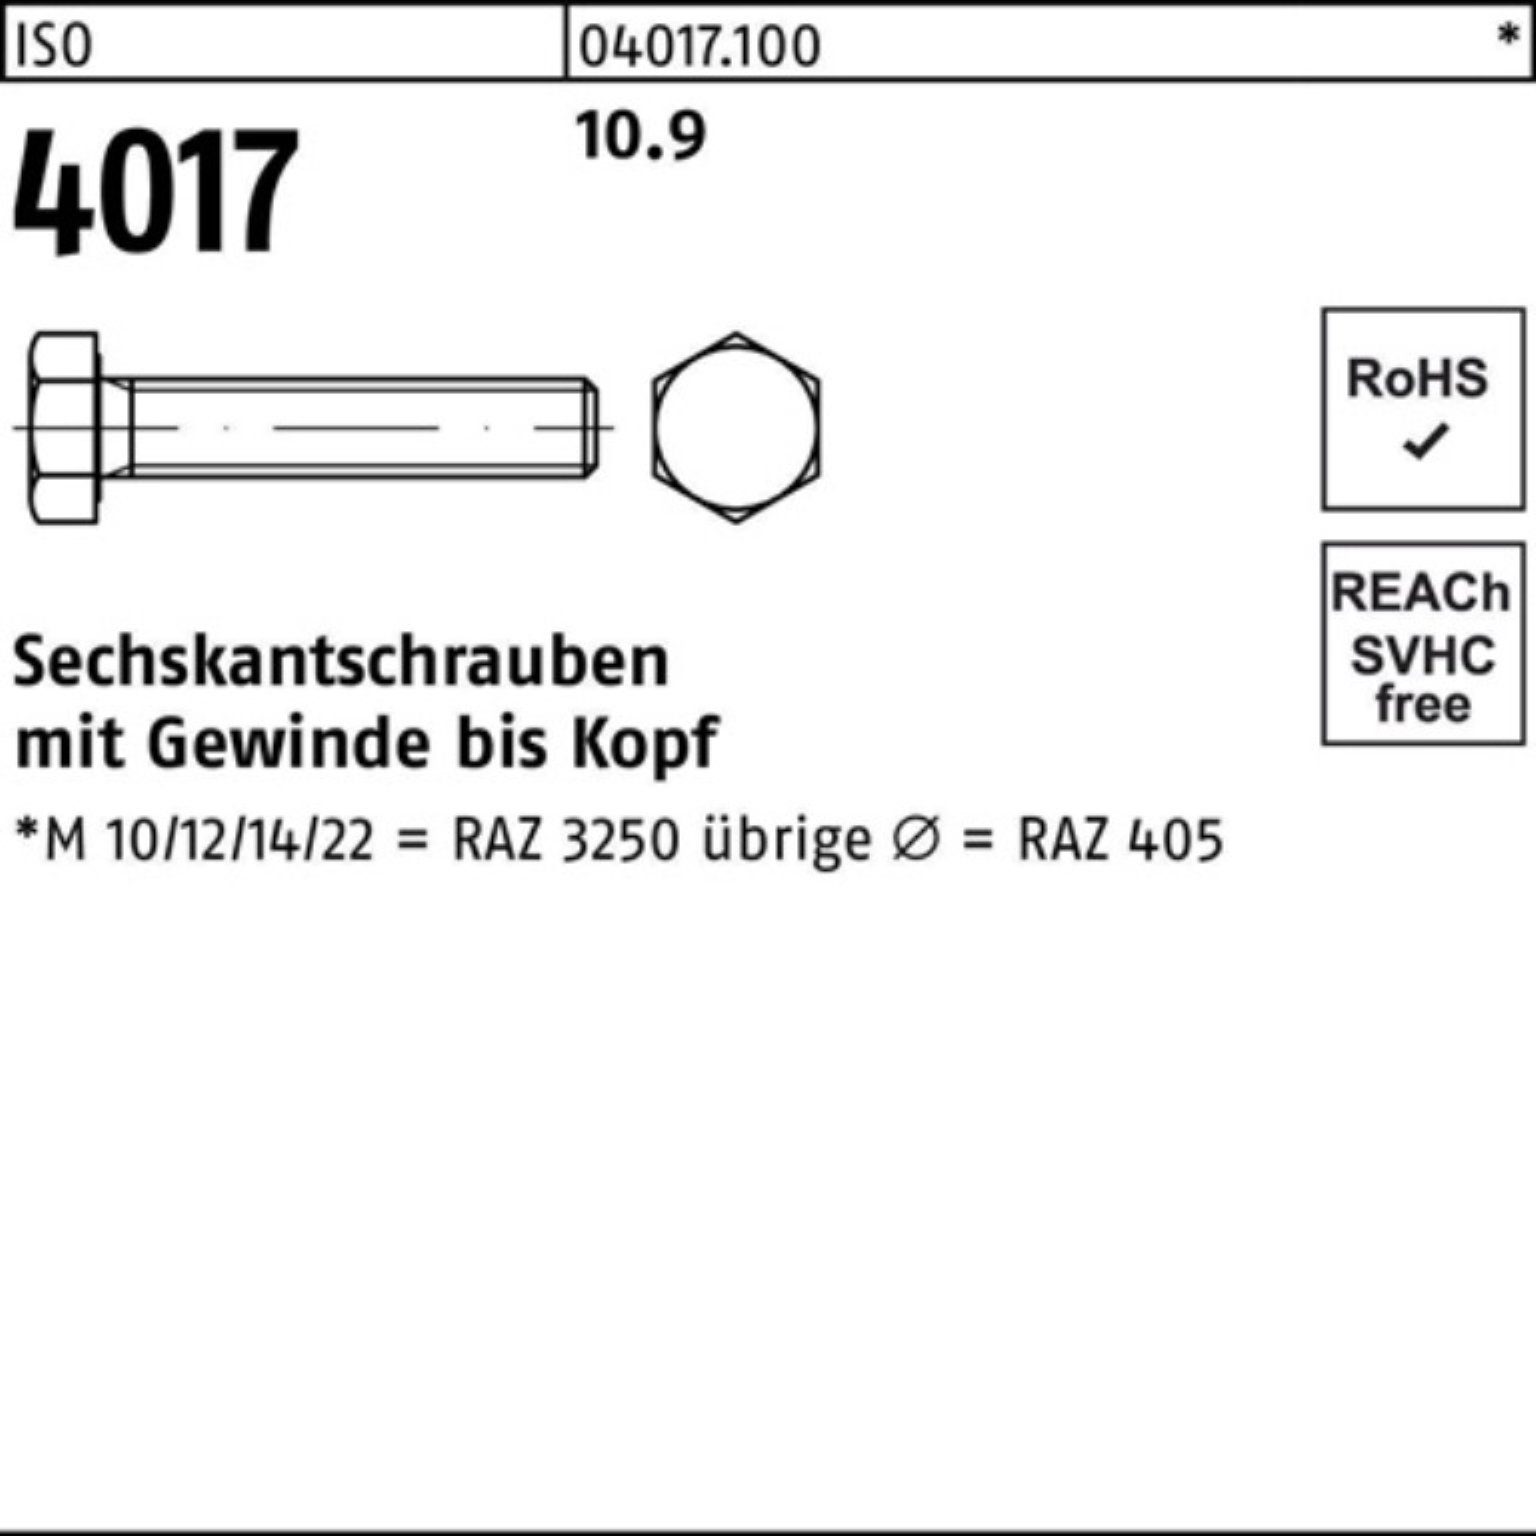 Bufab Sechskantschraube 100er VG ISO 10.9 Sechskantschraube M14x 4017 160 ISO 25 4 Pack Stück